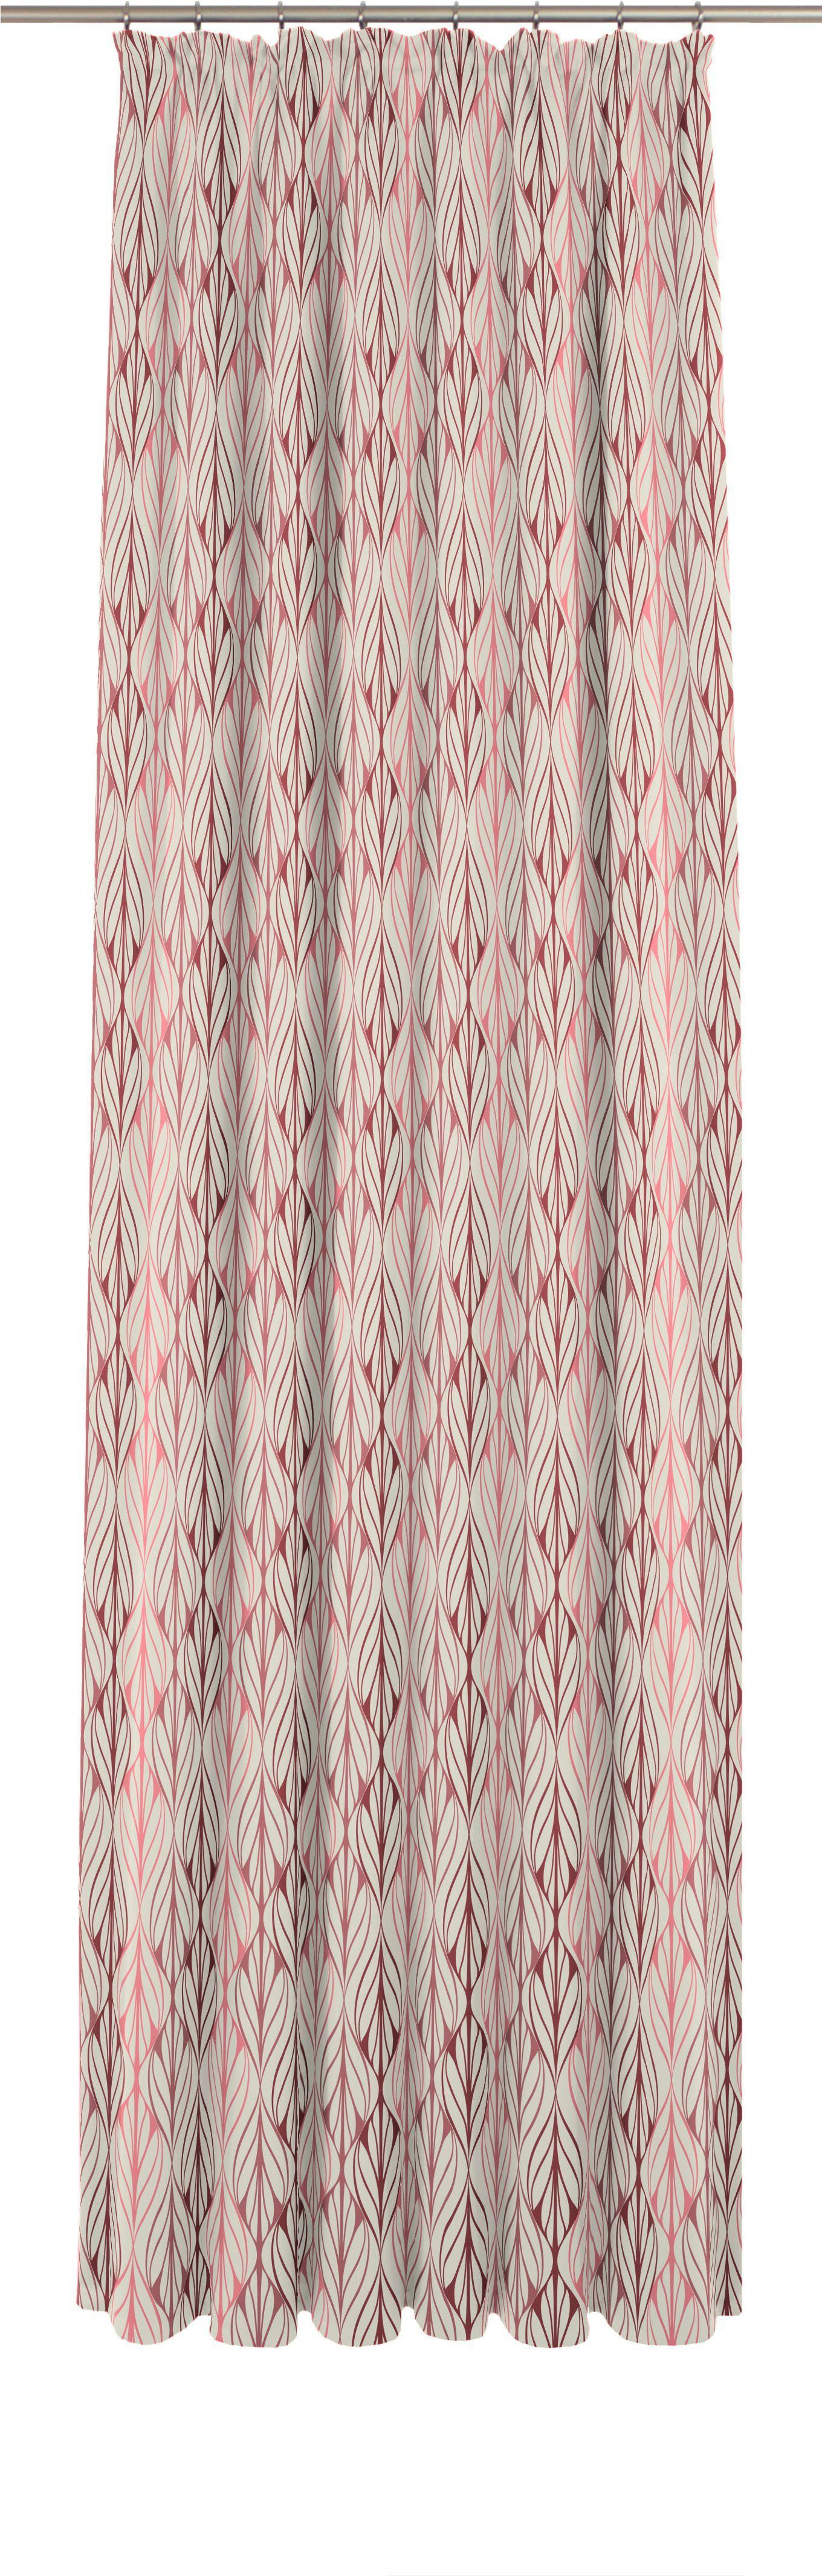 blickdicht, Wave, St), rot/natur/rosa Vorhang (1 Bio-Baumwolle nachhaltig aus Jacquard, Adam, Kräuselband